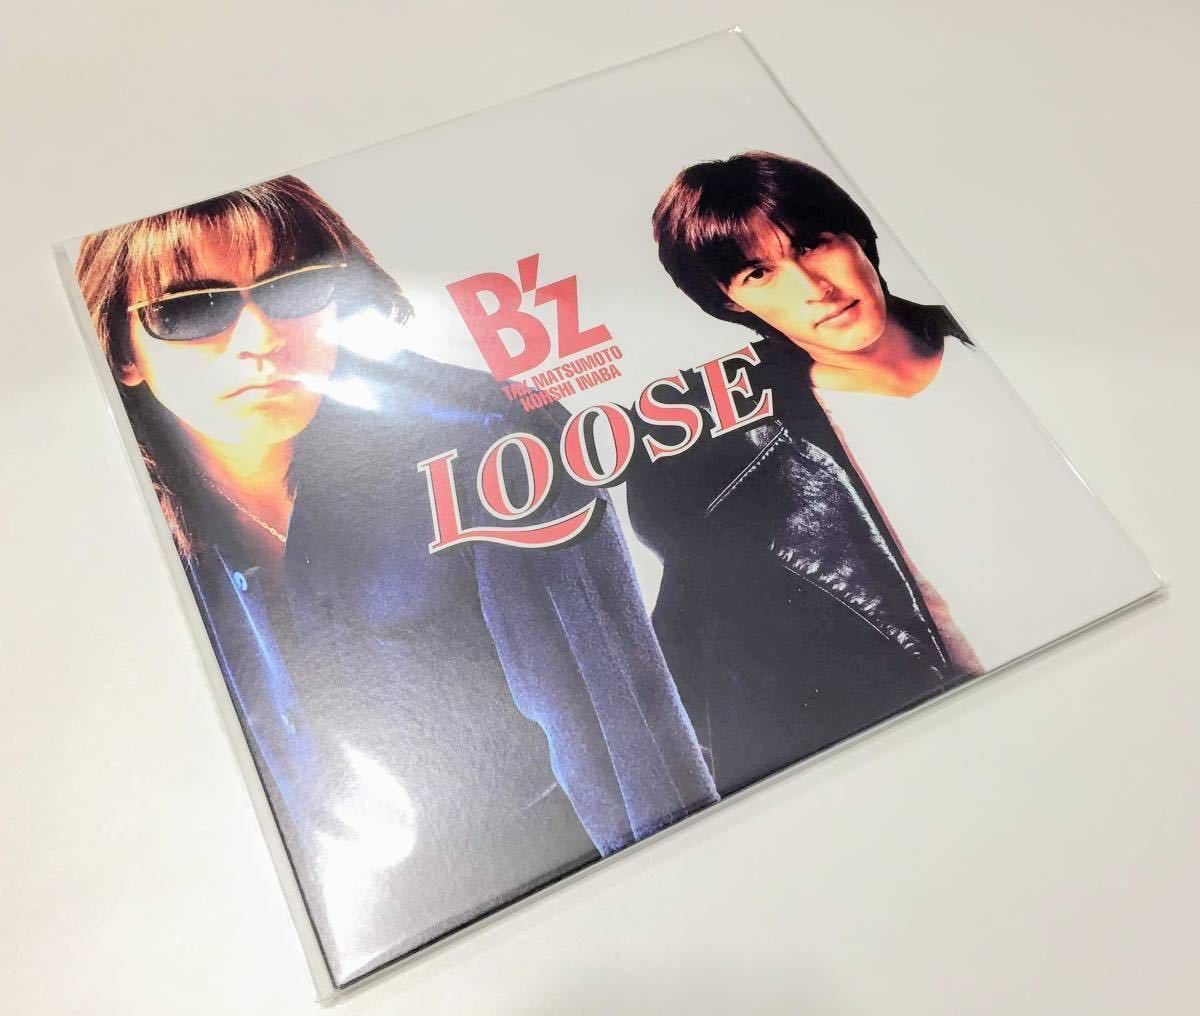 値引き 送料無料 新品 B'z RUN アナログ盤 LP レコード www.hallo.tv